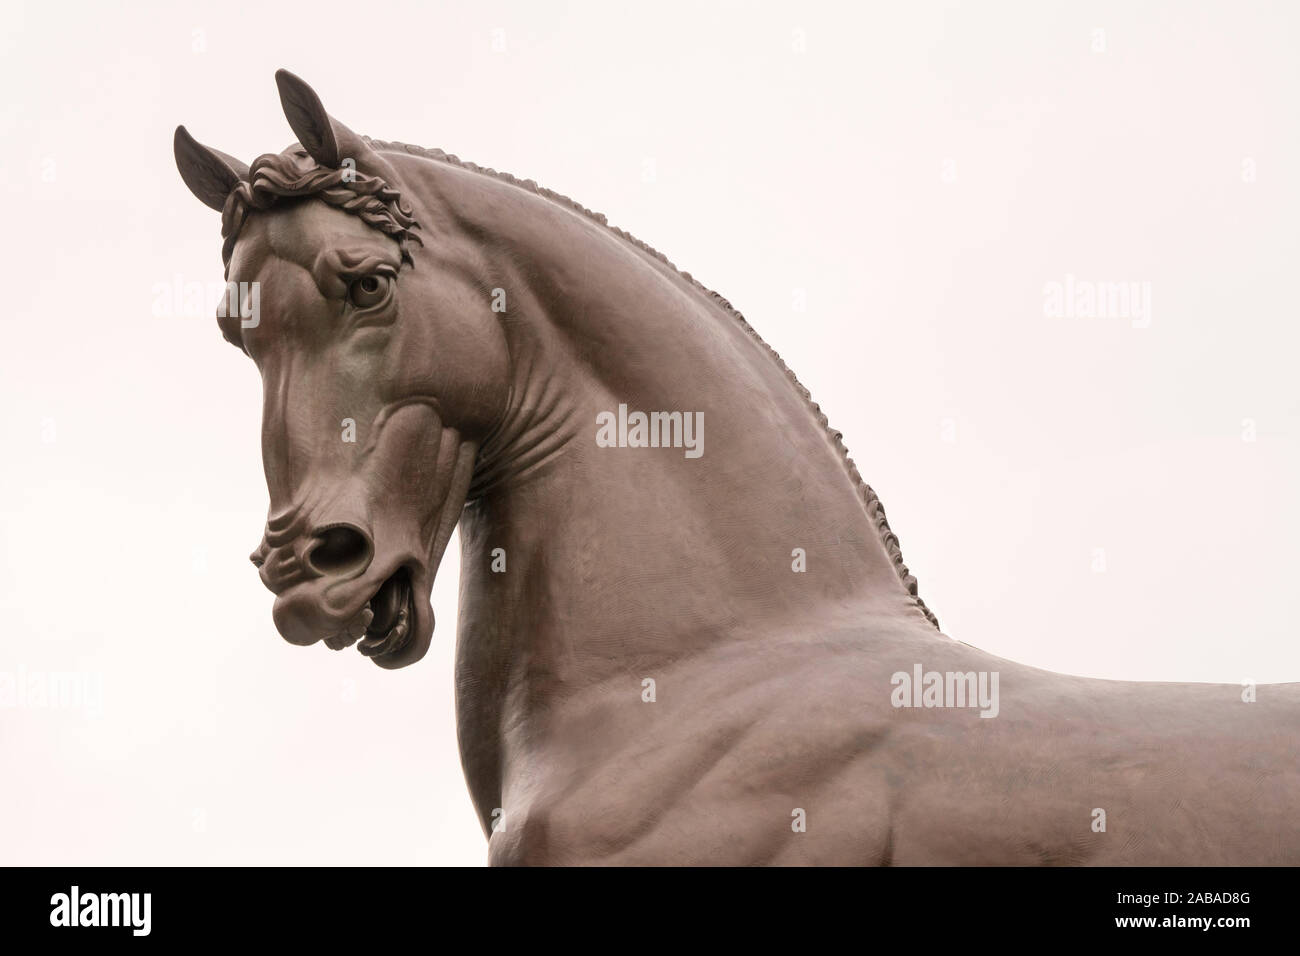 Cheval bronze statue conçu par Leonardo da Vinci à Milan, Italie. Banque D'Images